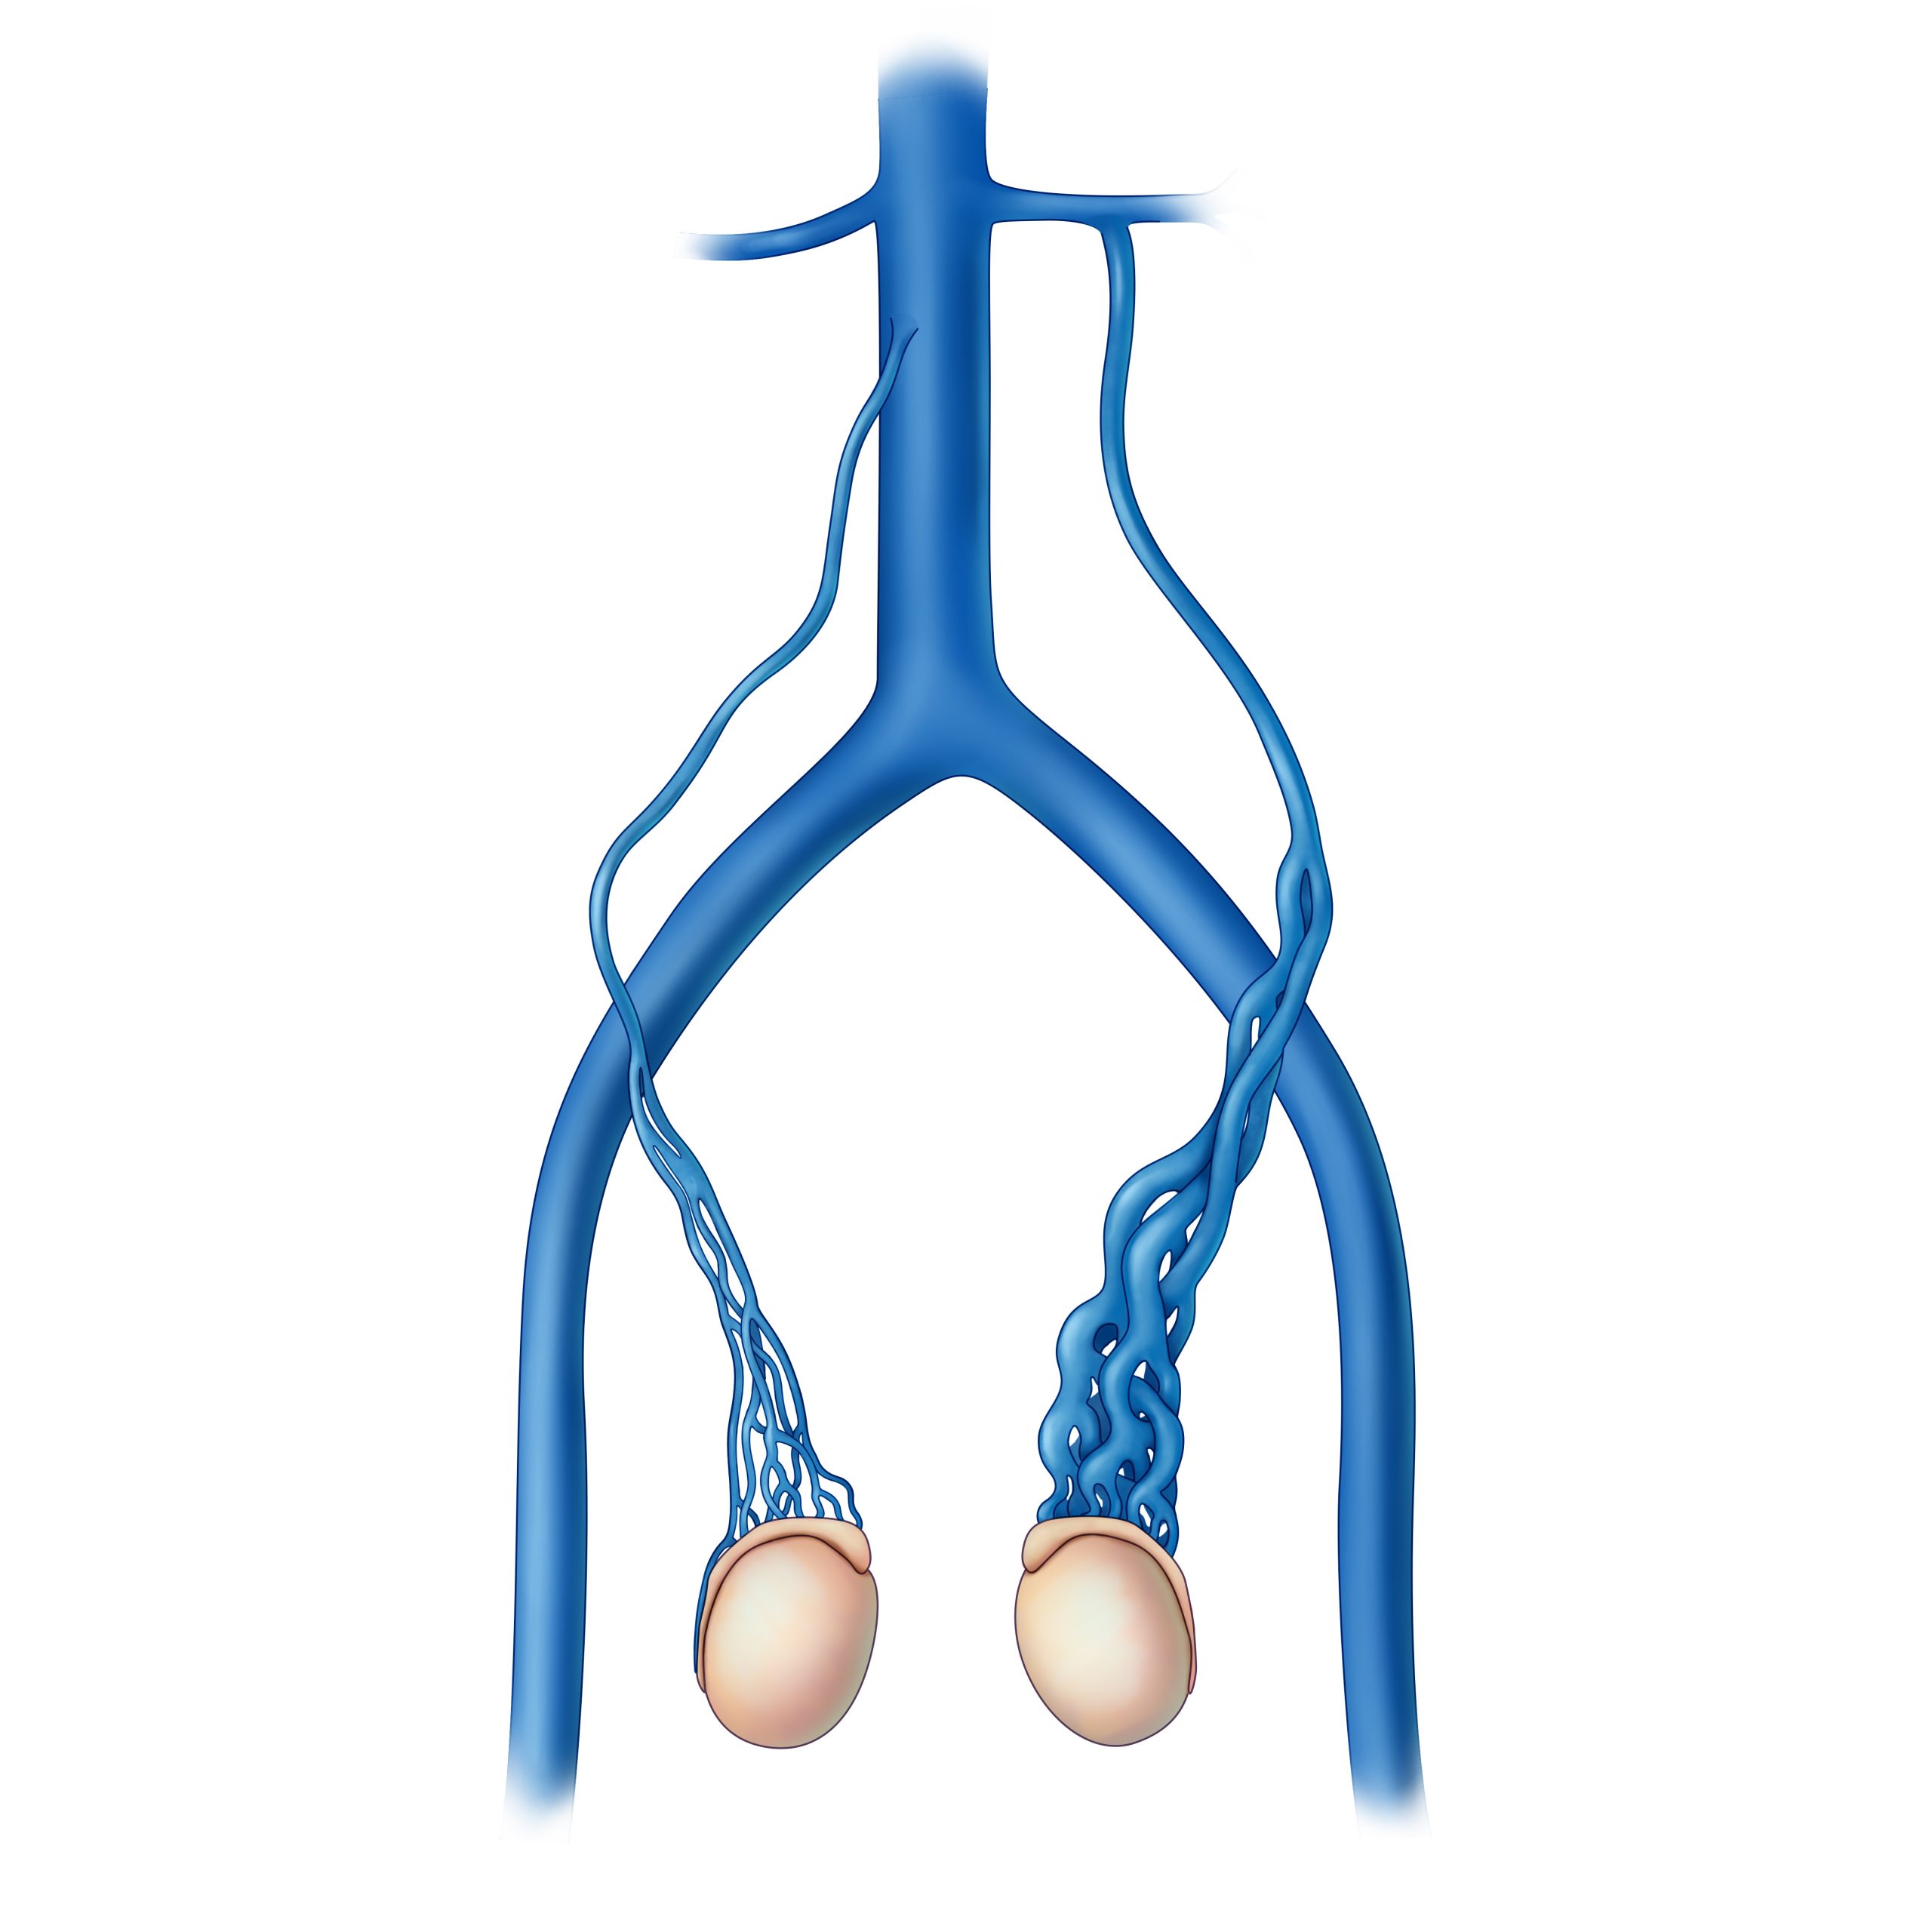 Sperm count after varicoceles surgery